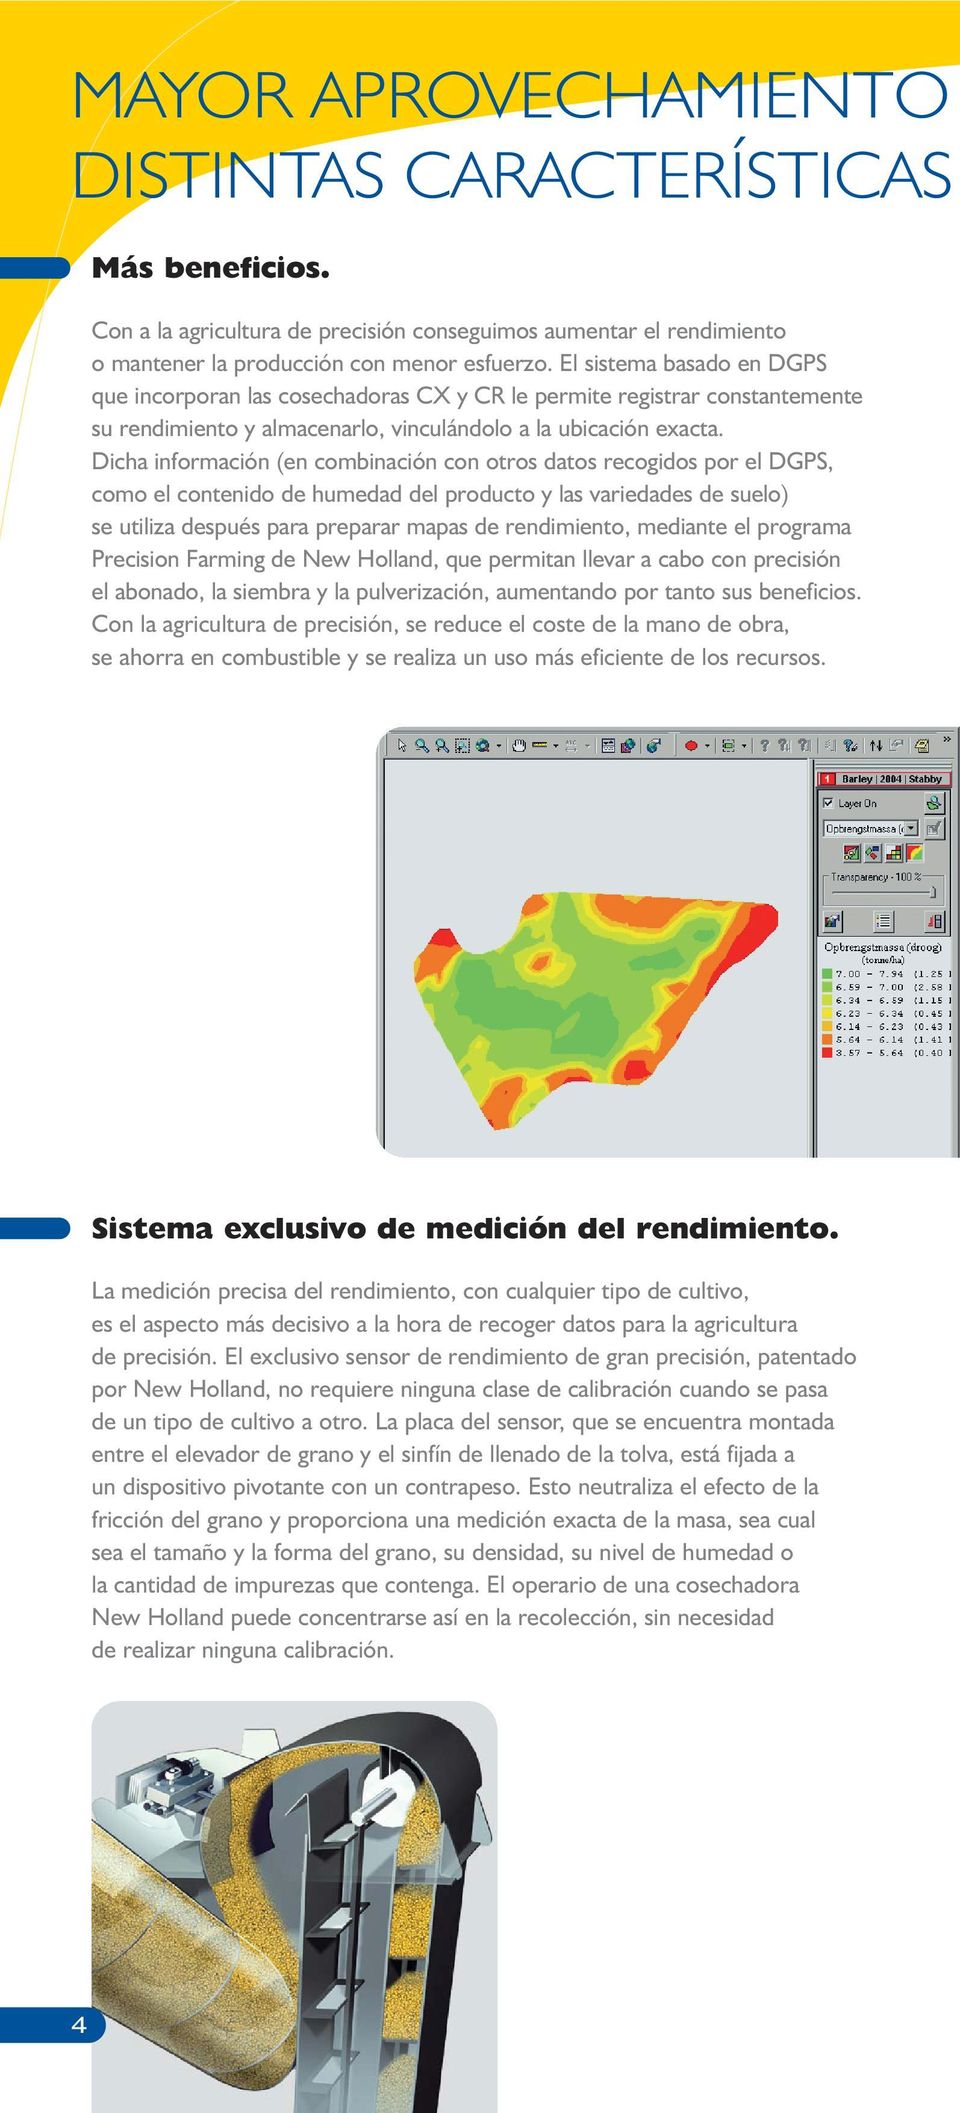 Dicha información (en combinación con otros datos recogidos por el DGPS, como el contenido de humedad del producto y las variedades de suelo) se utiliza después para preparar mapas de rendimiento,